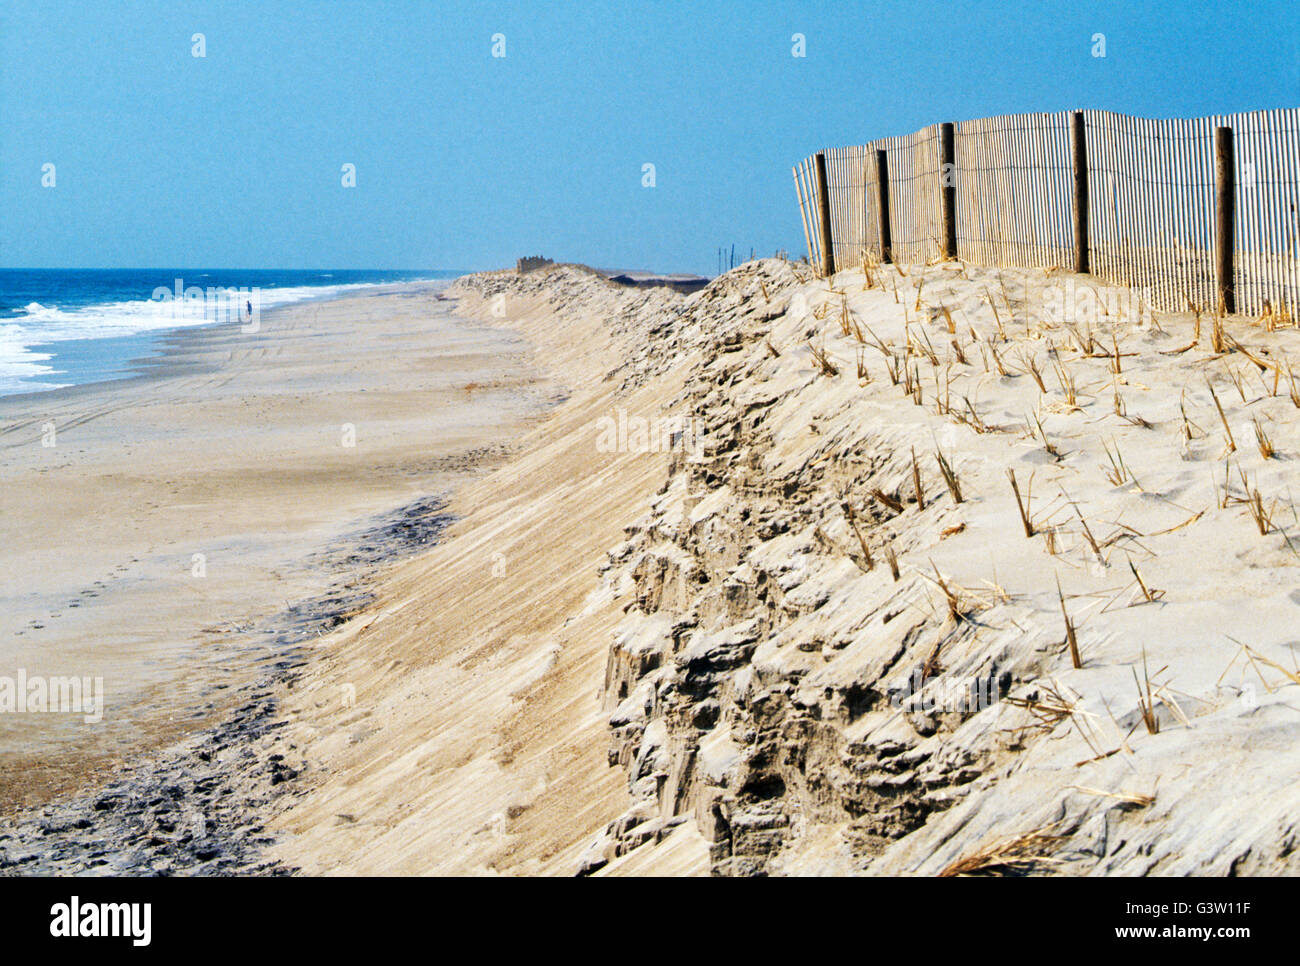 Hölzerne Barriere Zaun; Sand der Assateague Insel Assateague Beach, Chincoteague National Wildlife Refuge, Virginia, USA Stockfoto